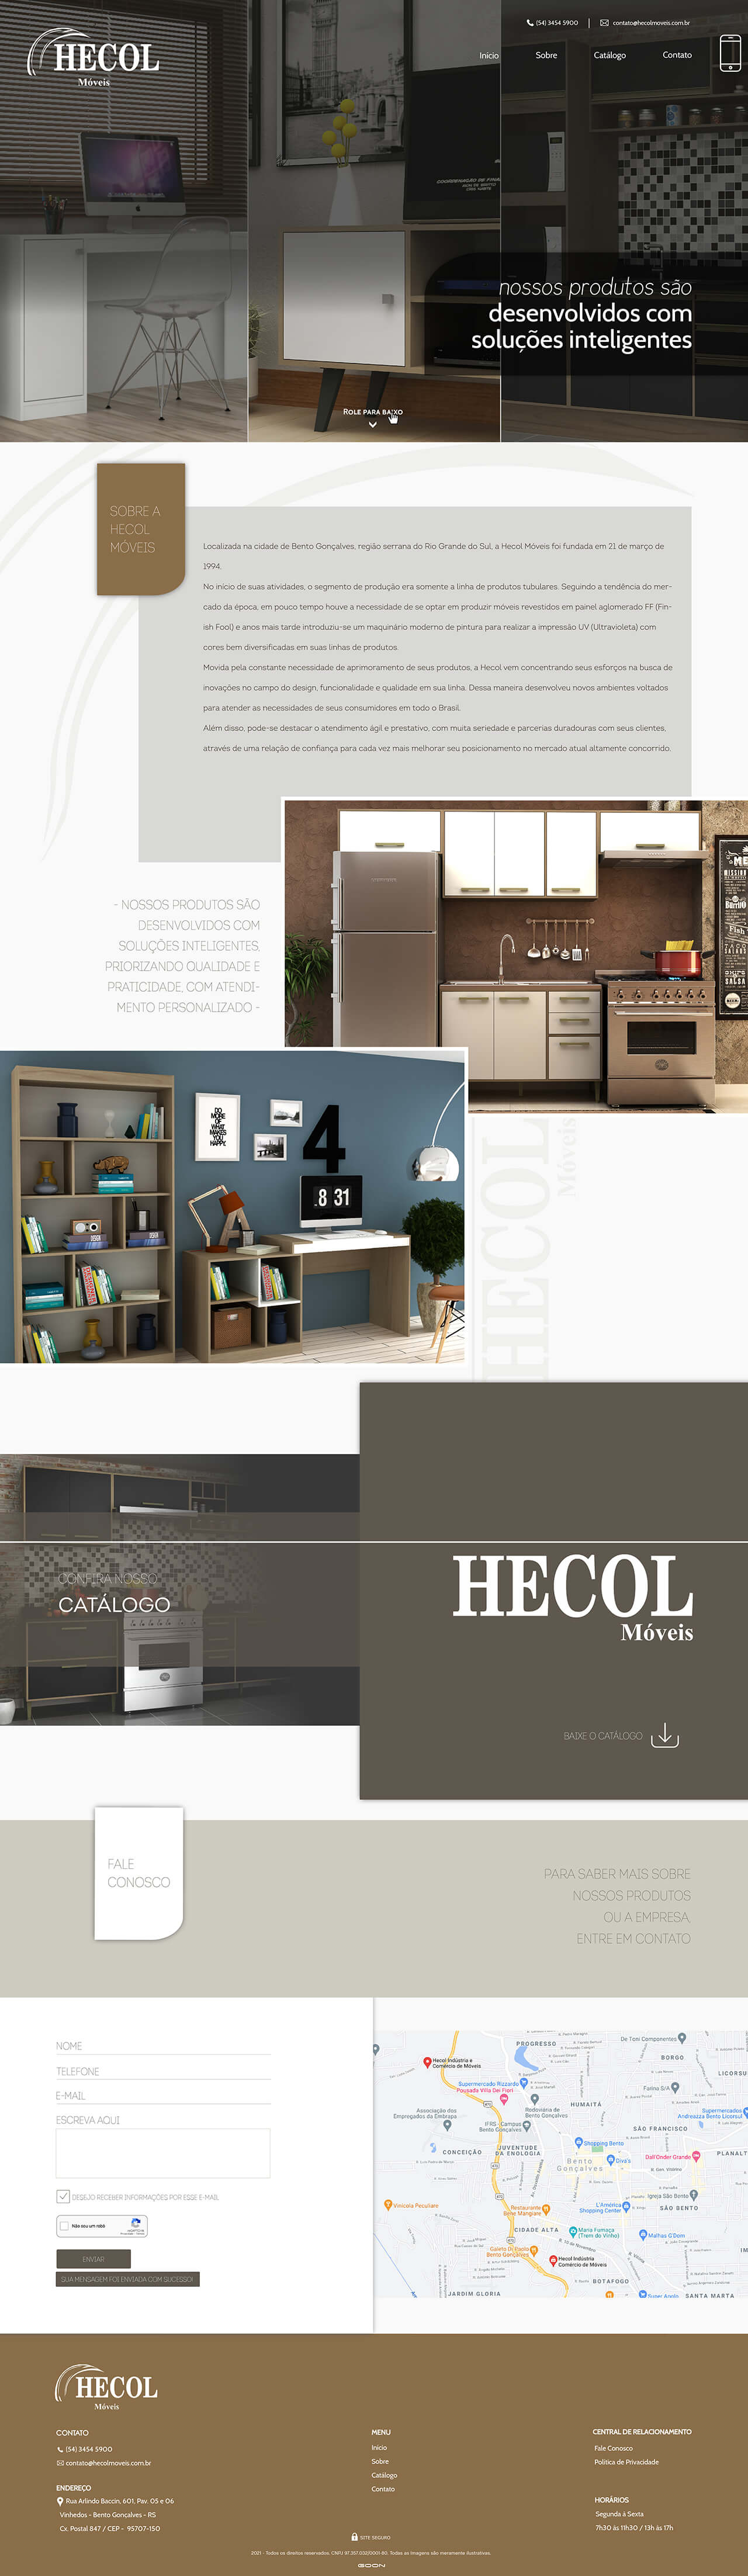 Layout Hecol versão desktop